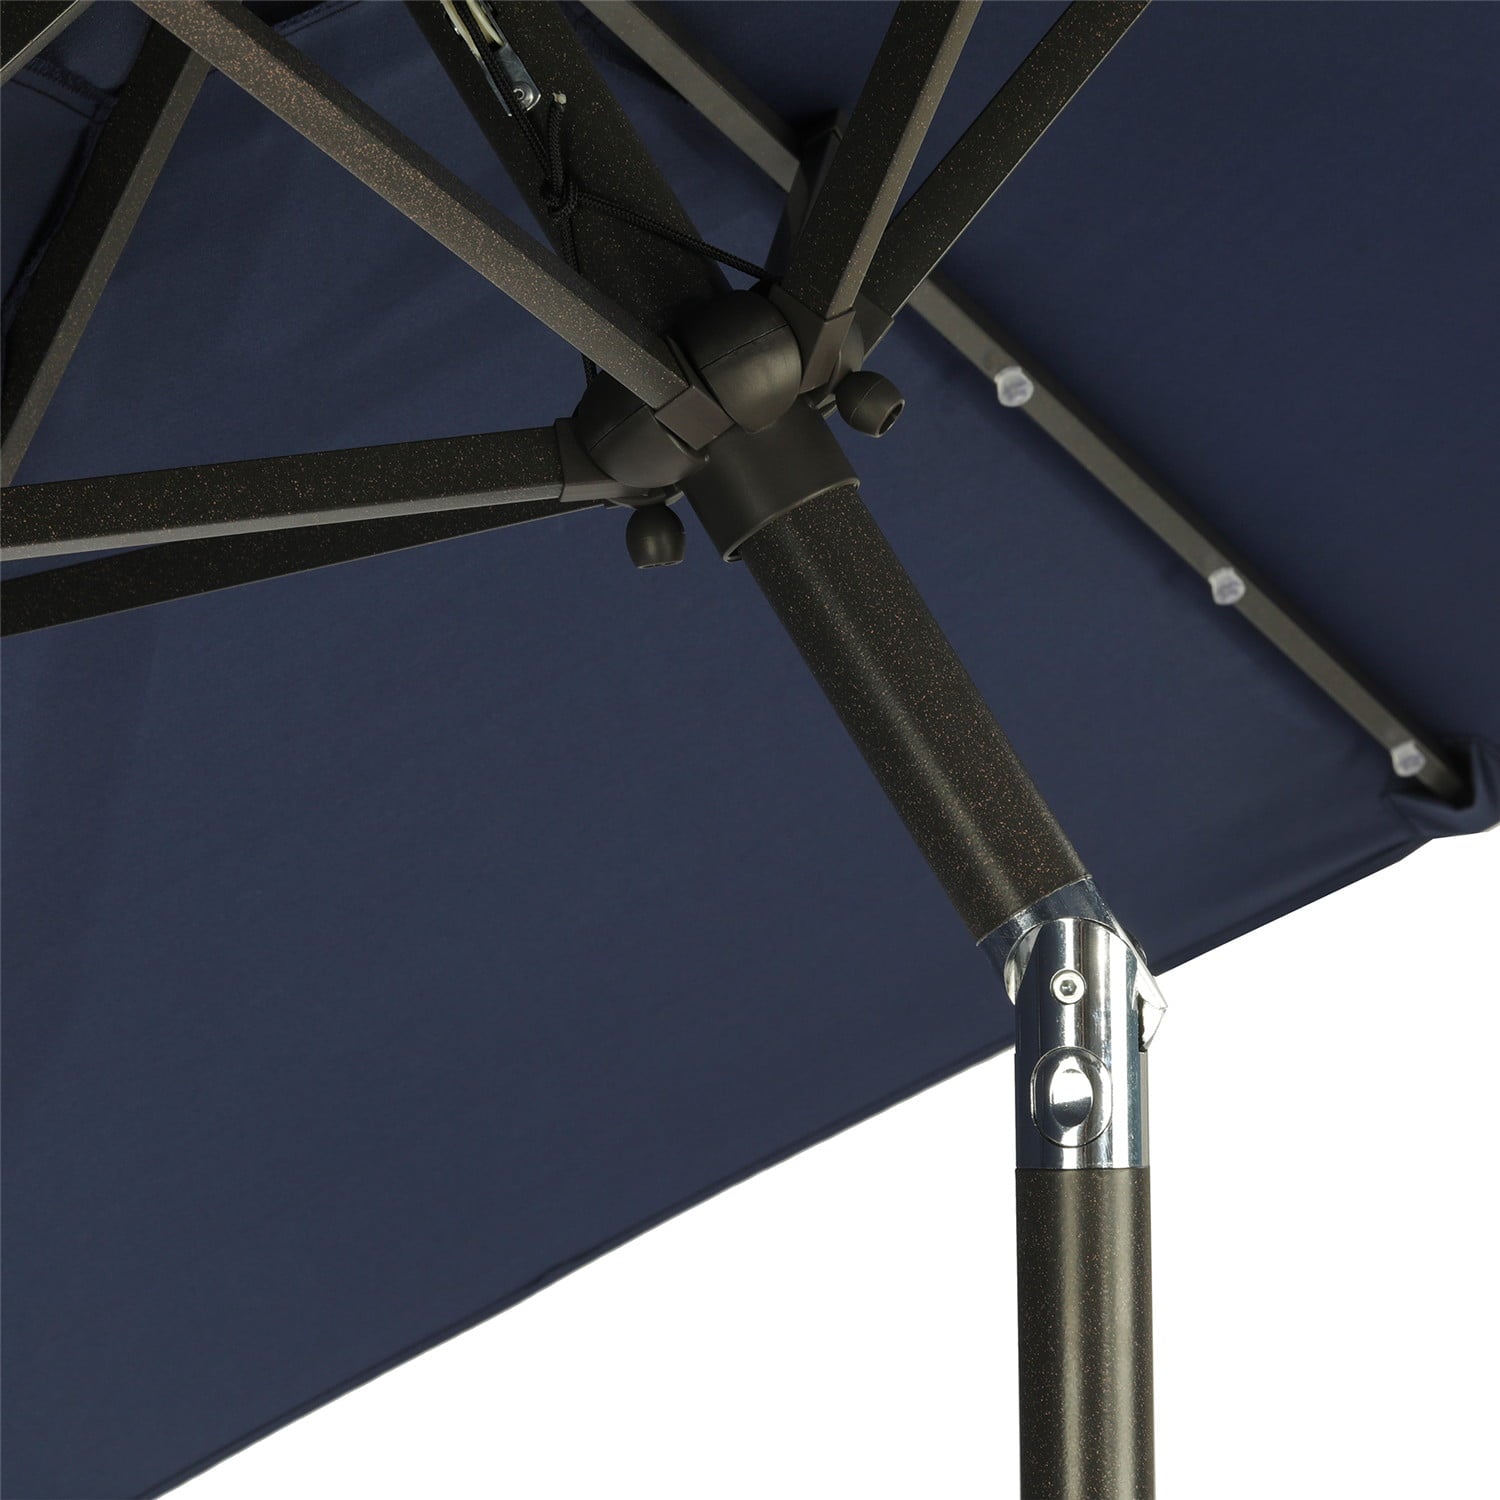 Cozyhom 7.5 ft Solar Umbrella 18 LED Lighted Patio Umbrella Market Table Umbrella for Deck, Pool, Navy blue